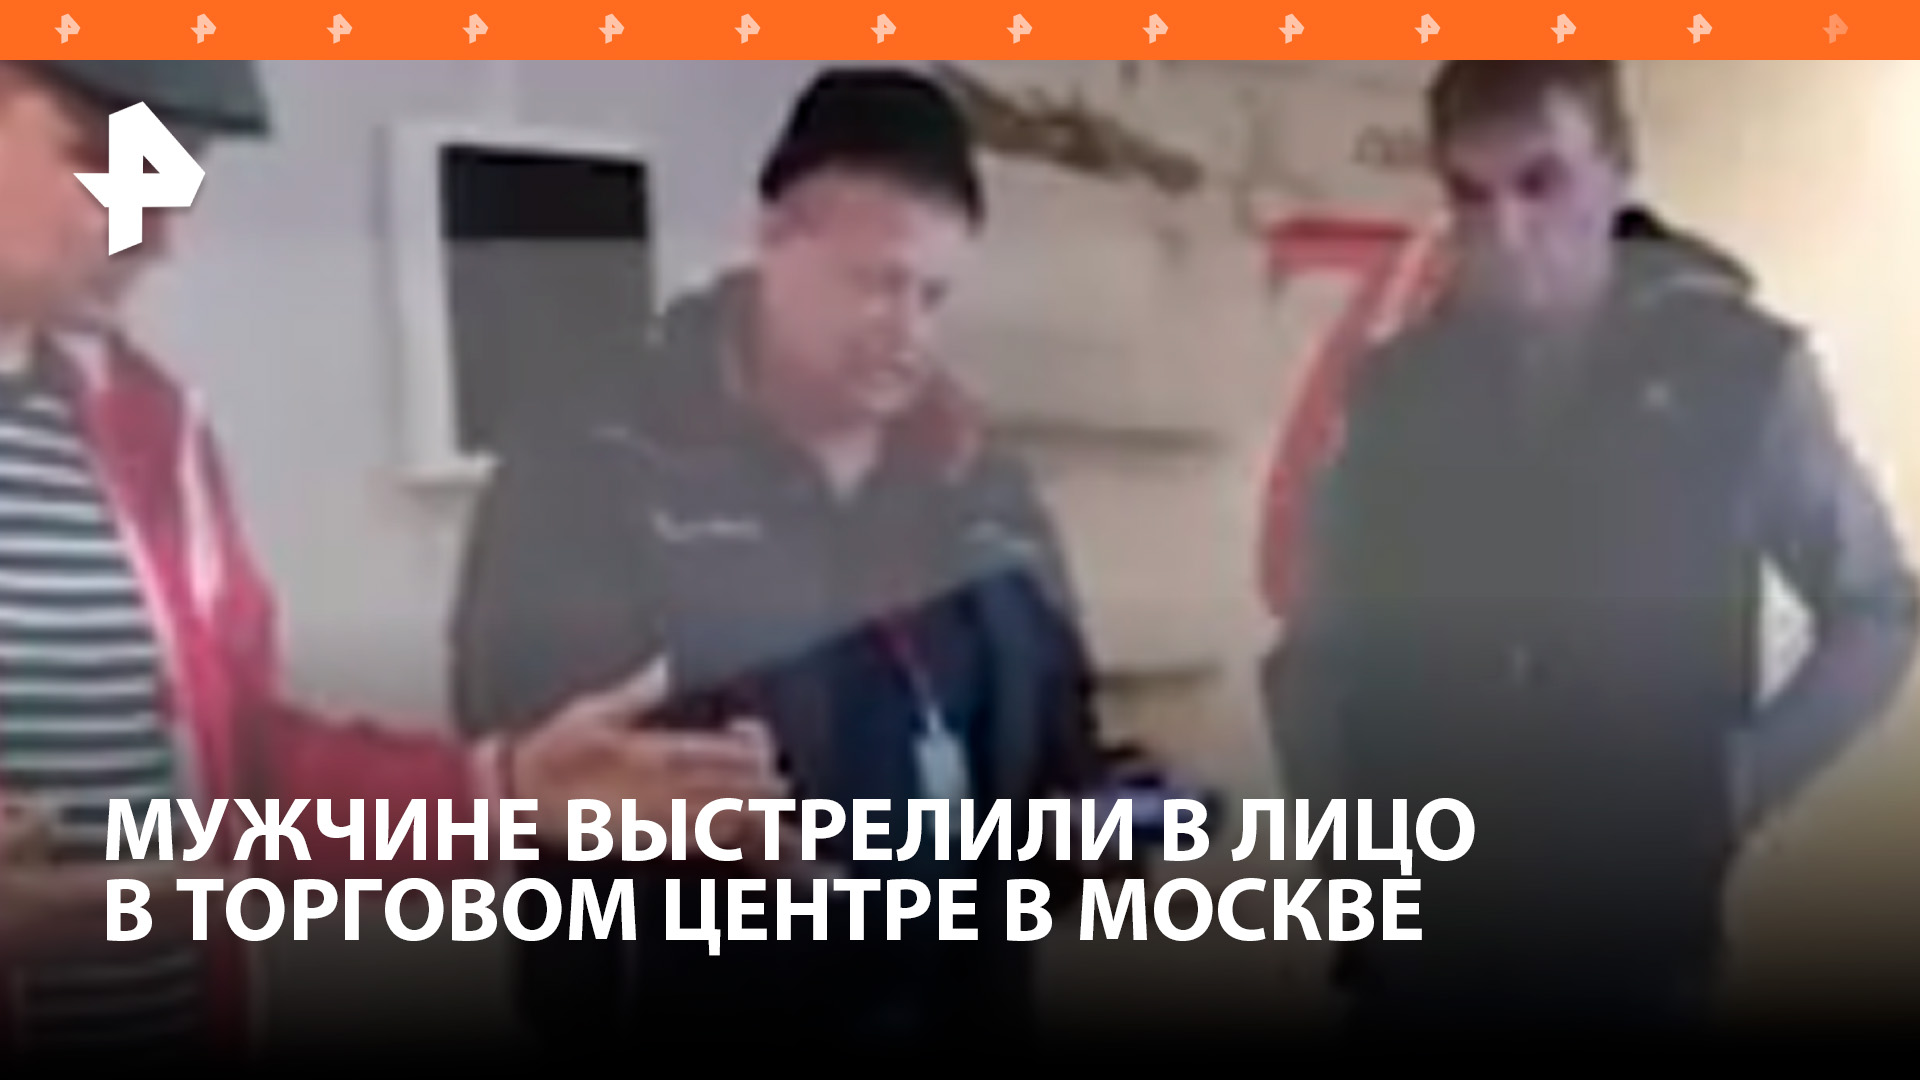 Мужчине выстрелили в лицо из пистолета в торговом центре в Москве / РЕН Новости